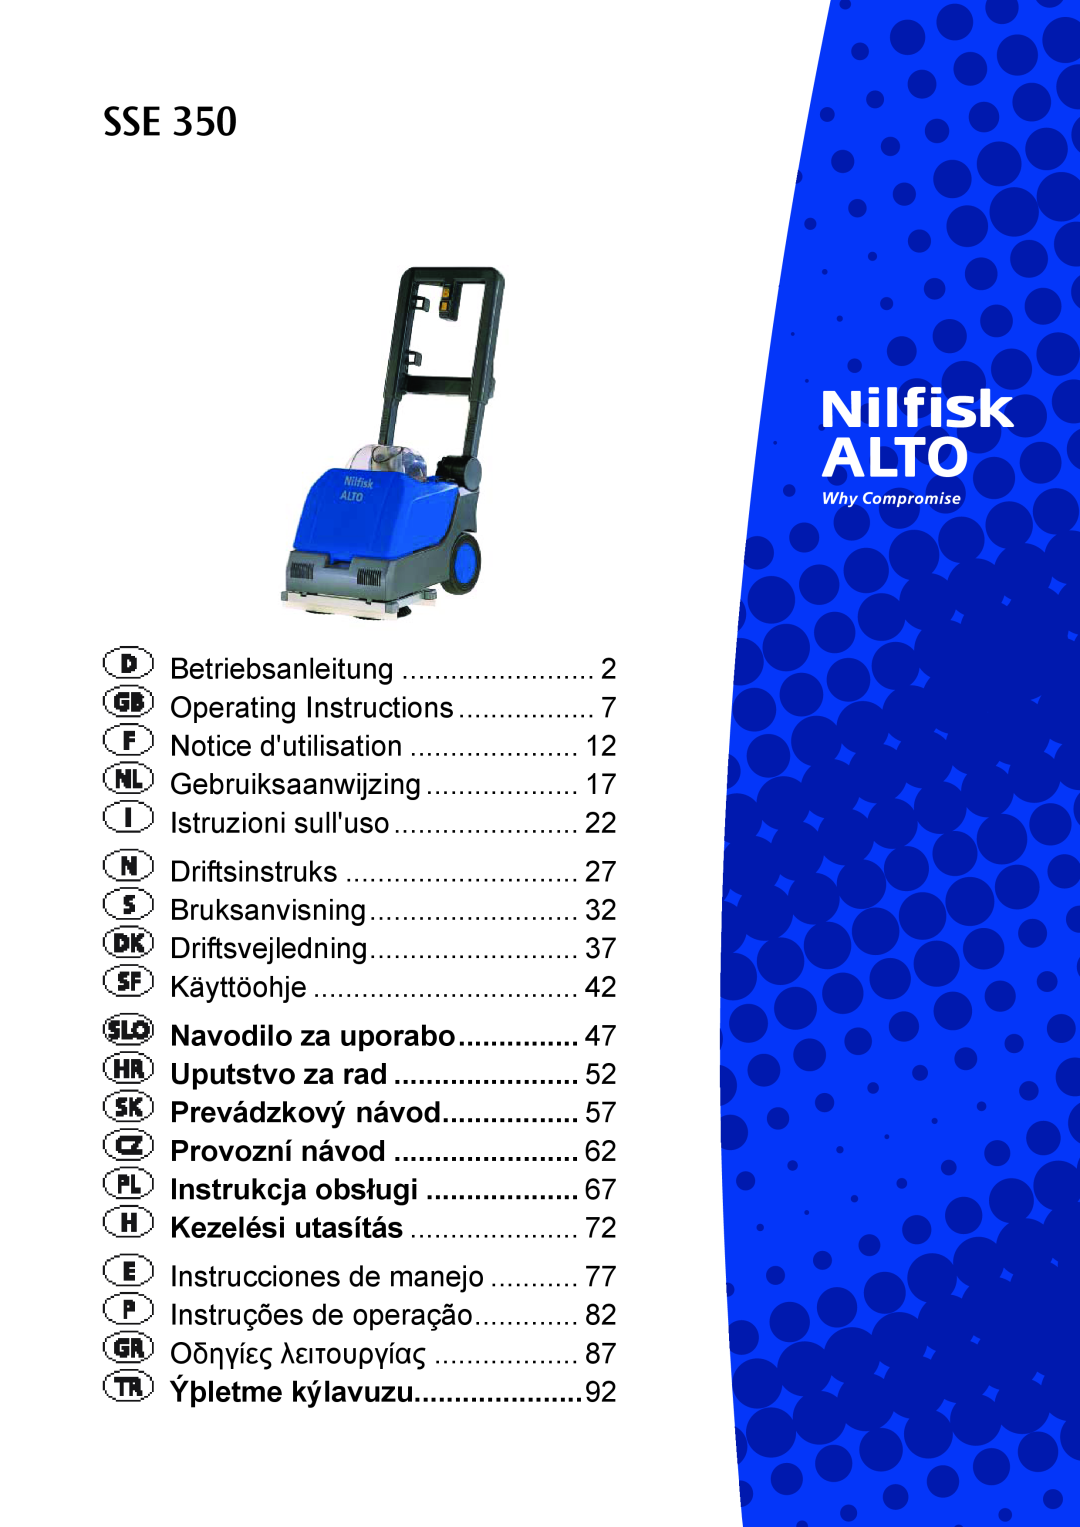 Nilfisk-ALTO SSE 350 manual Navodilo za uporabo, Uputstvo za rad, Prevádzkový návod, Provozní návod, Instrukcja obsługi 